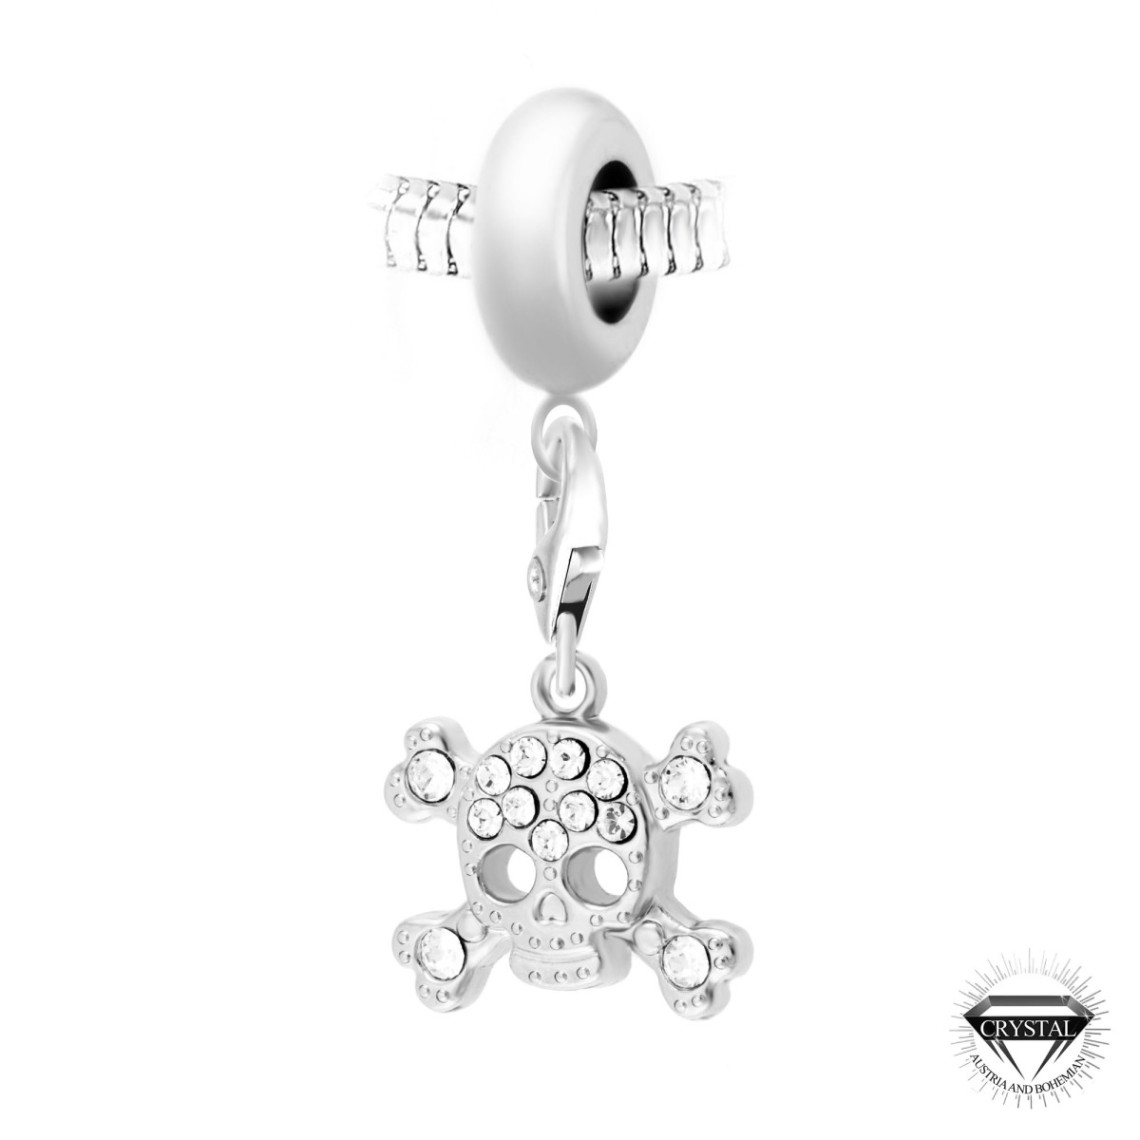 So Charm Bijoux Charm perle Tête de Mort orné de cristaux Swarovski par SC Crystal Paris® BEA0044+CH0120-argent